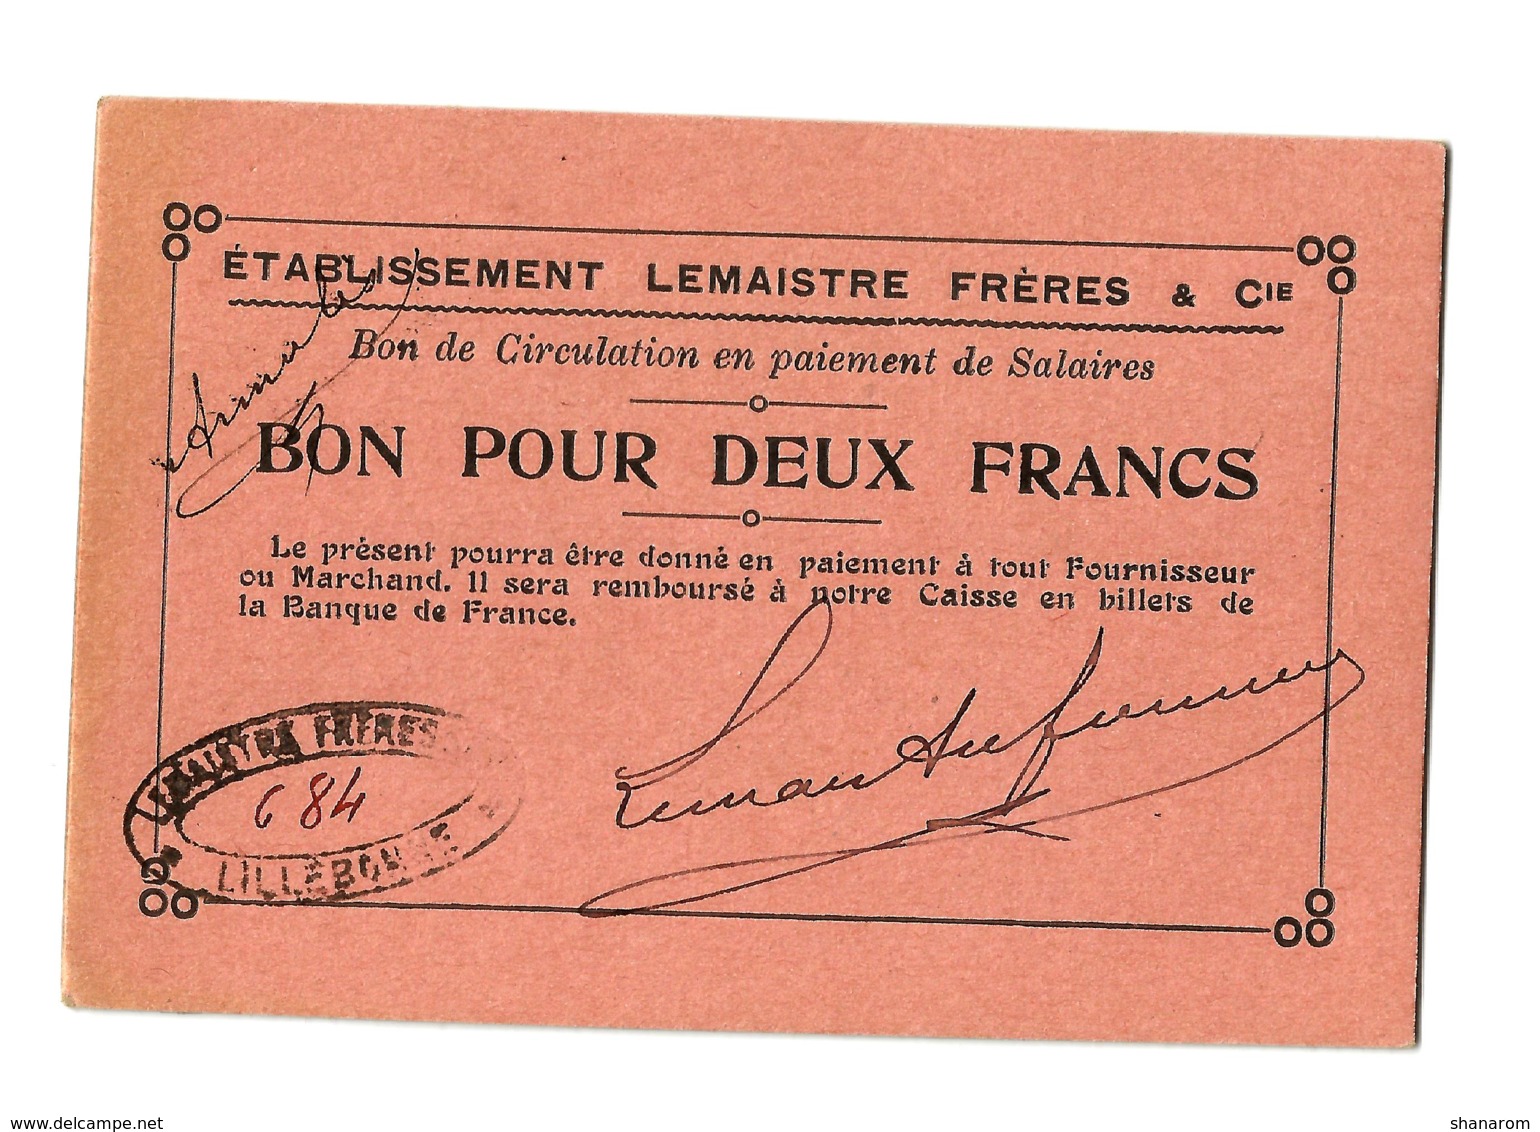 1914 - 1918 // LILLEBONNE (Seine-Maritime) // Etb LEMAISTRE FRERES & Cie // Bon Pour Deux Francs - Bons & Nécessité